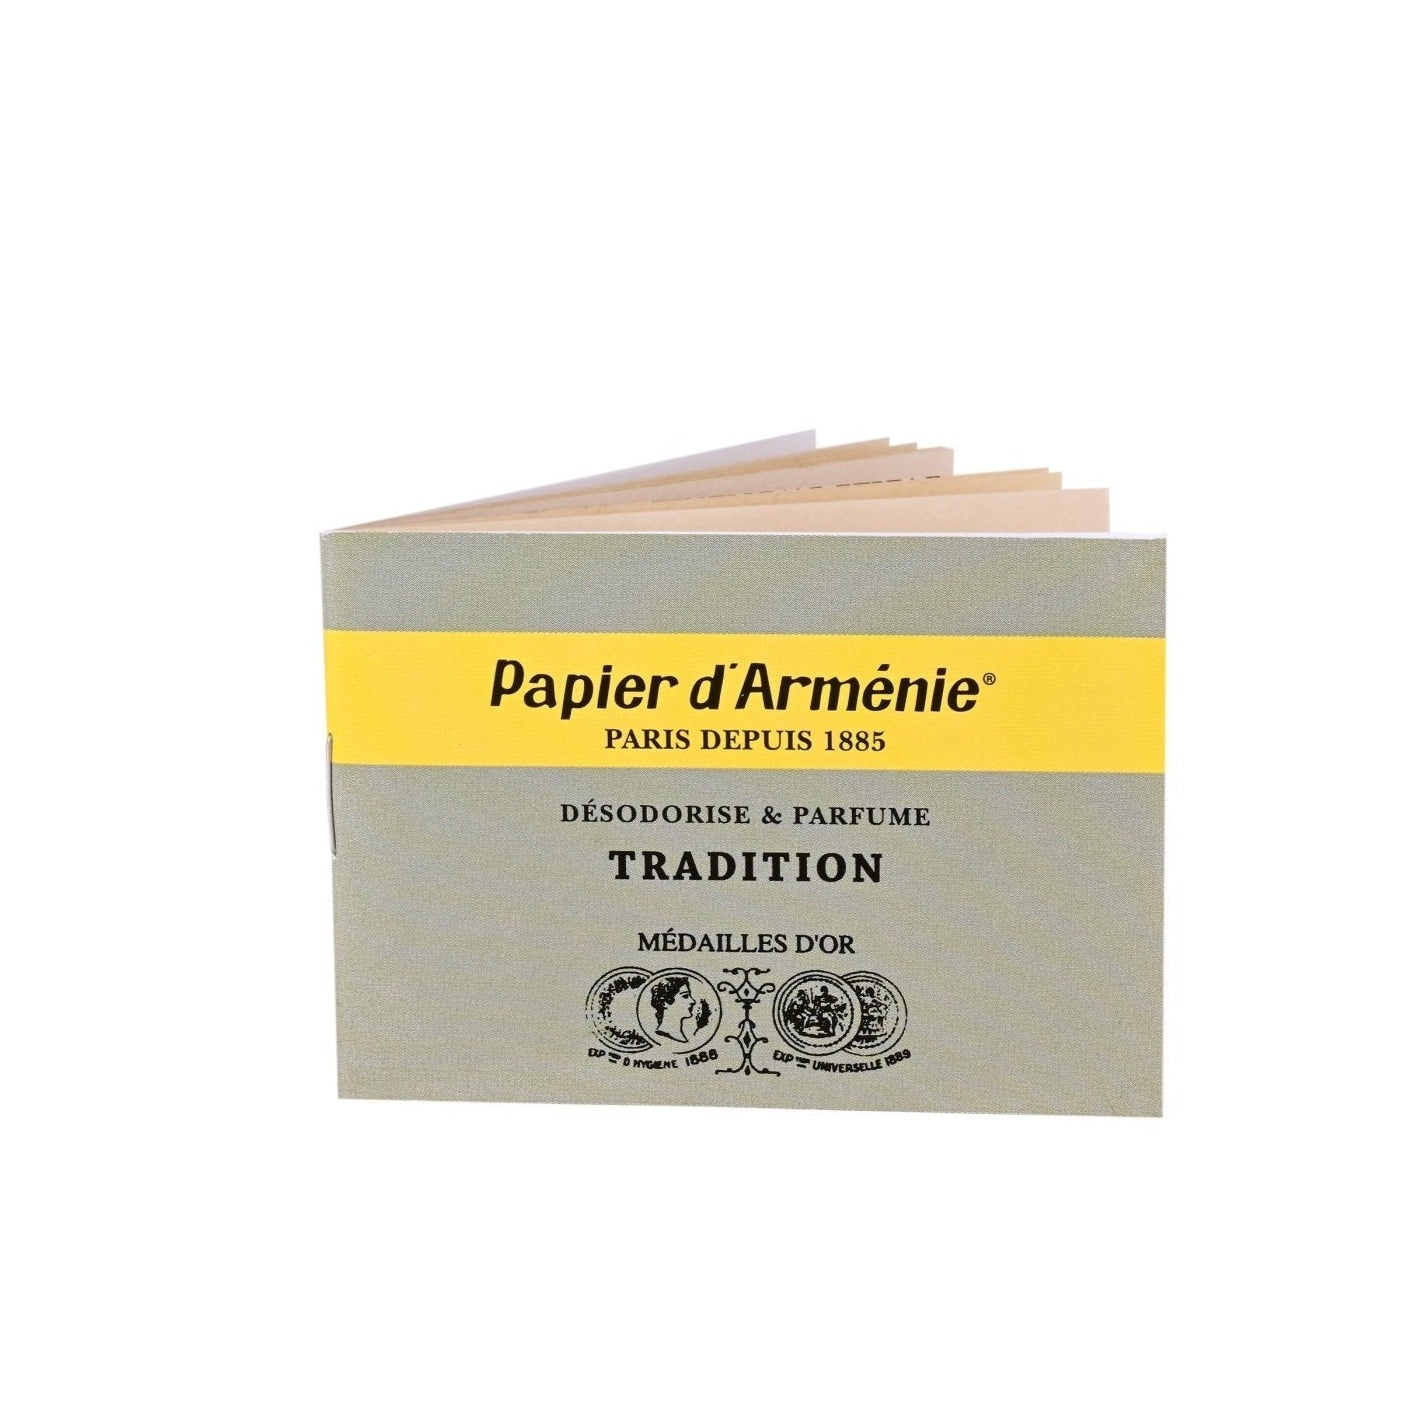 Papier D'armenie incense paper - Artisan Stories